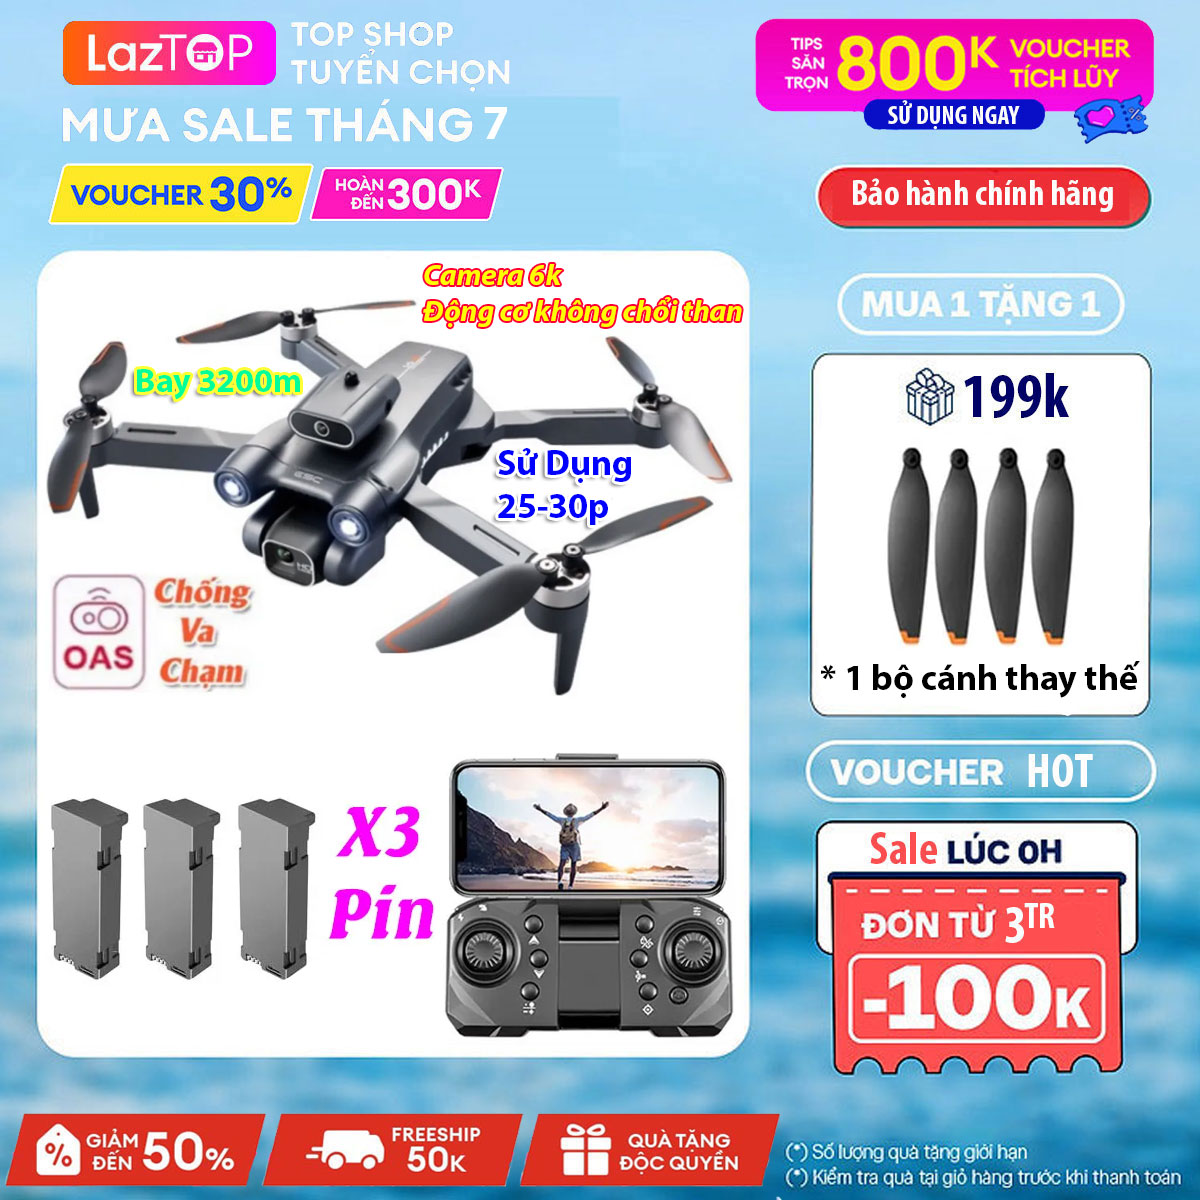 [VOUCHER 800K DUY NHẤT 15.01] Flycam mini Flycam 8K play camera máy bay flycam 8k flycam có camera drone flycam k911 Pro giá rẻ hơn flycam điều khiển từ xa L900Pro F11 Pro 4K S167 L106 SG 108 Pro E99 Max Mavic 2 pro…